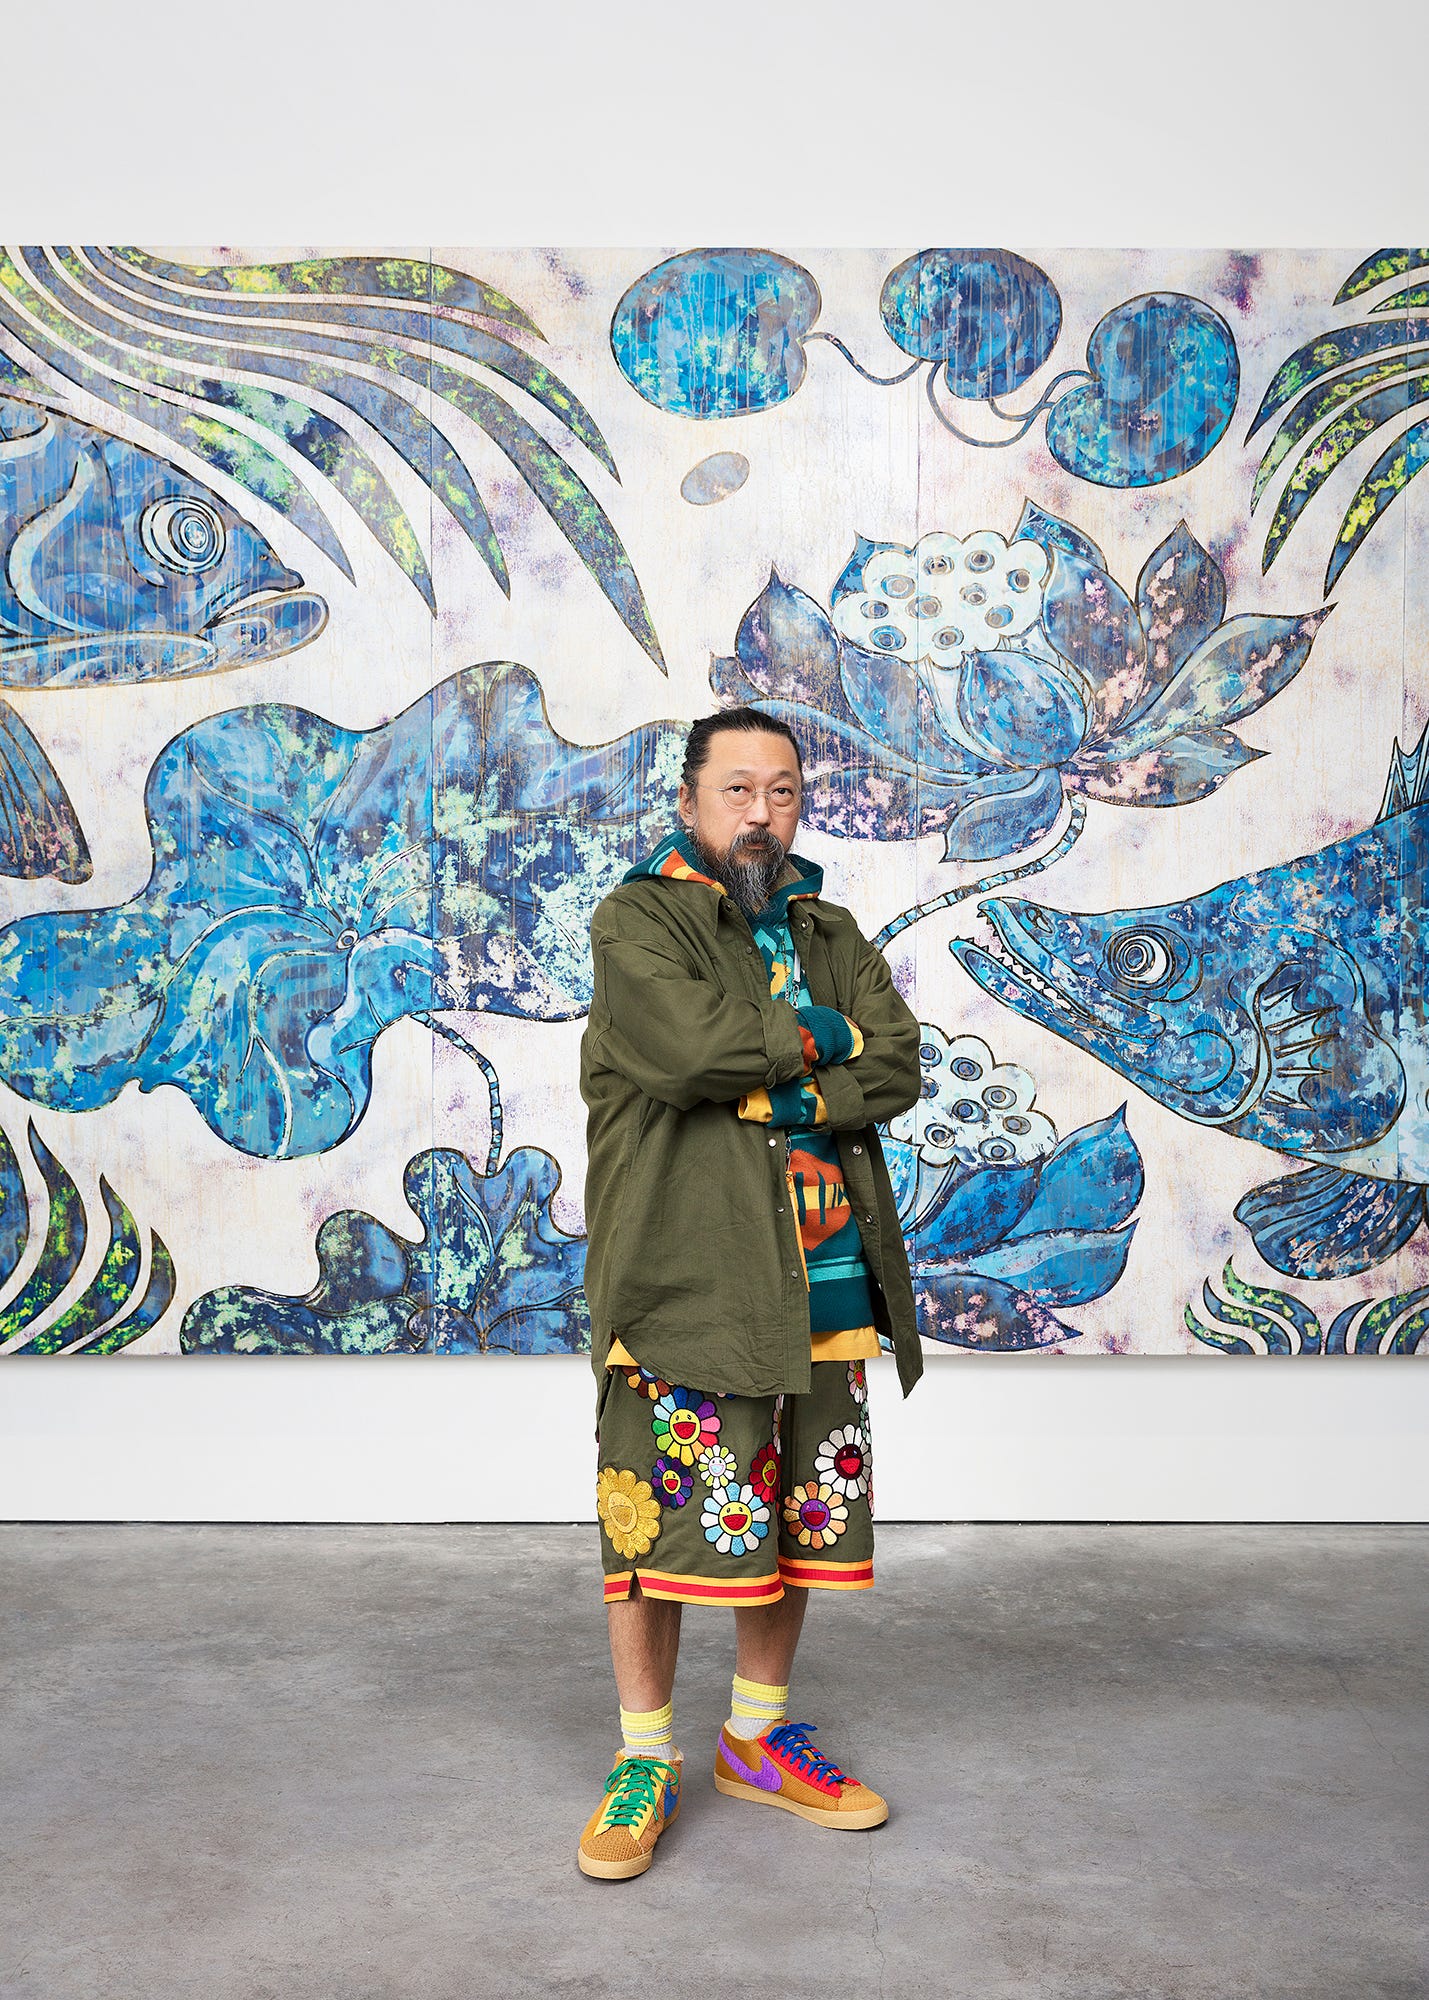 From video games to kabuki: Japanese artist Takashi Murakami's